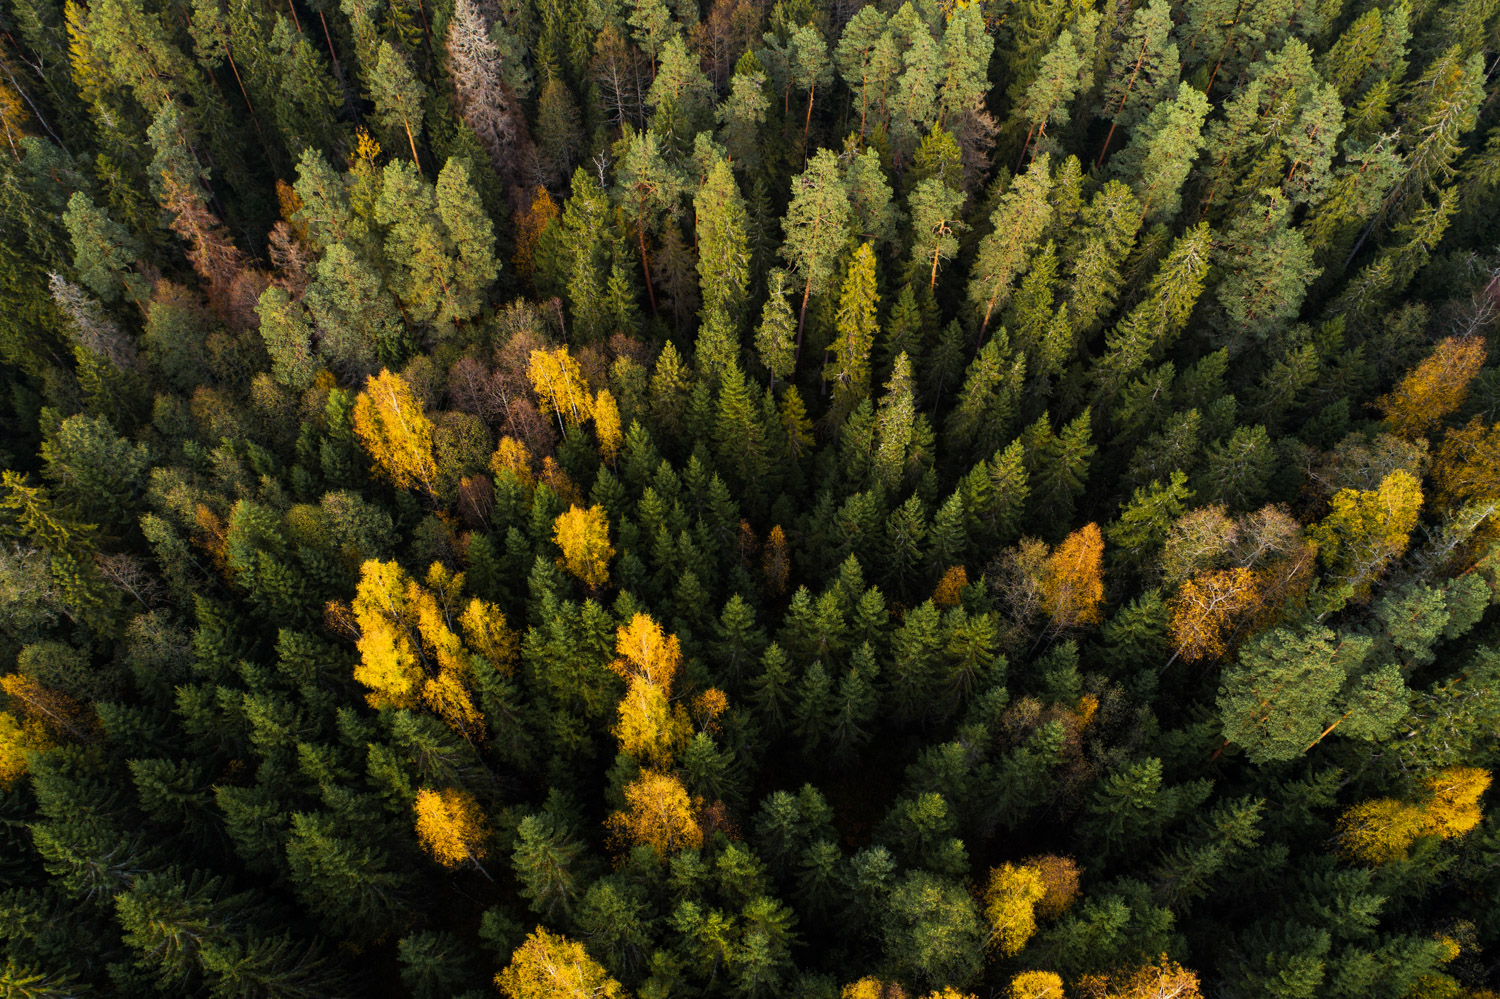 Keskkonnaühendused: plaanitav metsanduse arengukava ohustab metsi ja nende ökosüsteeme